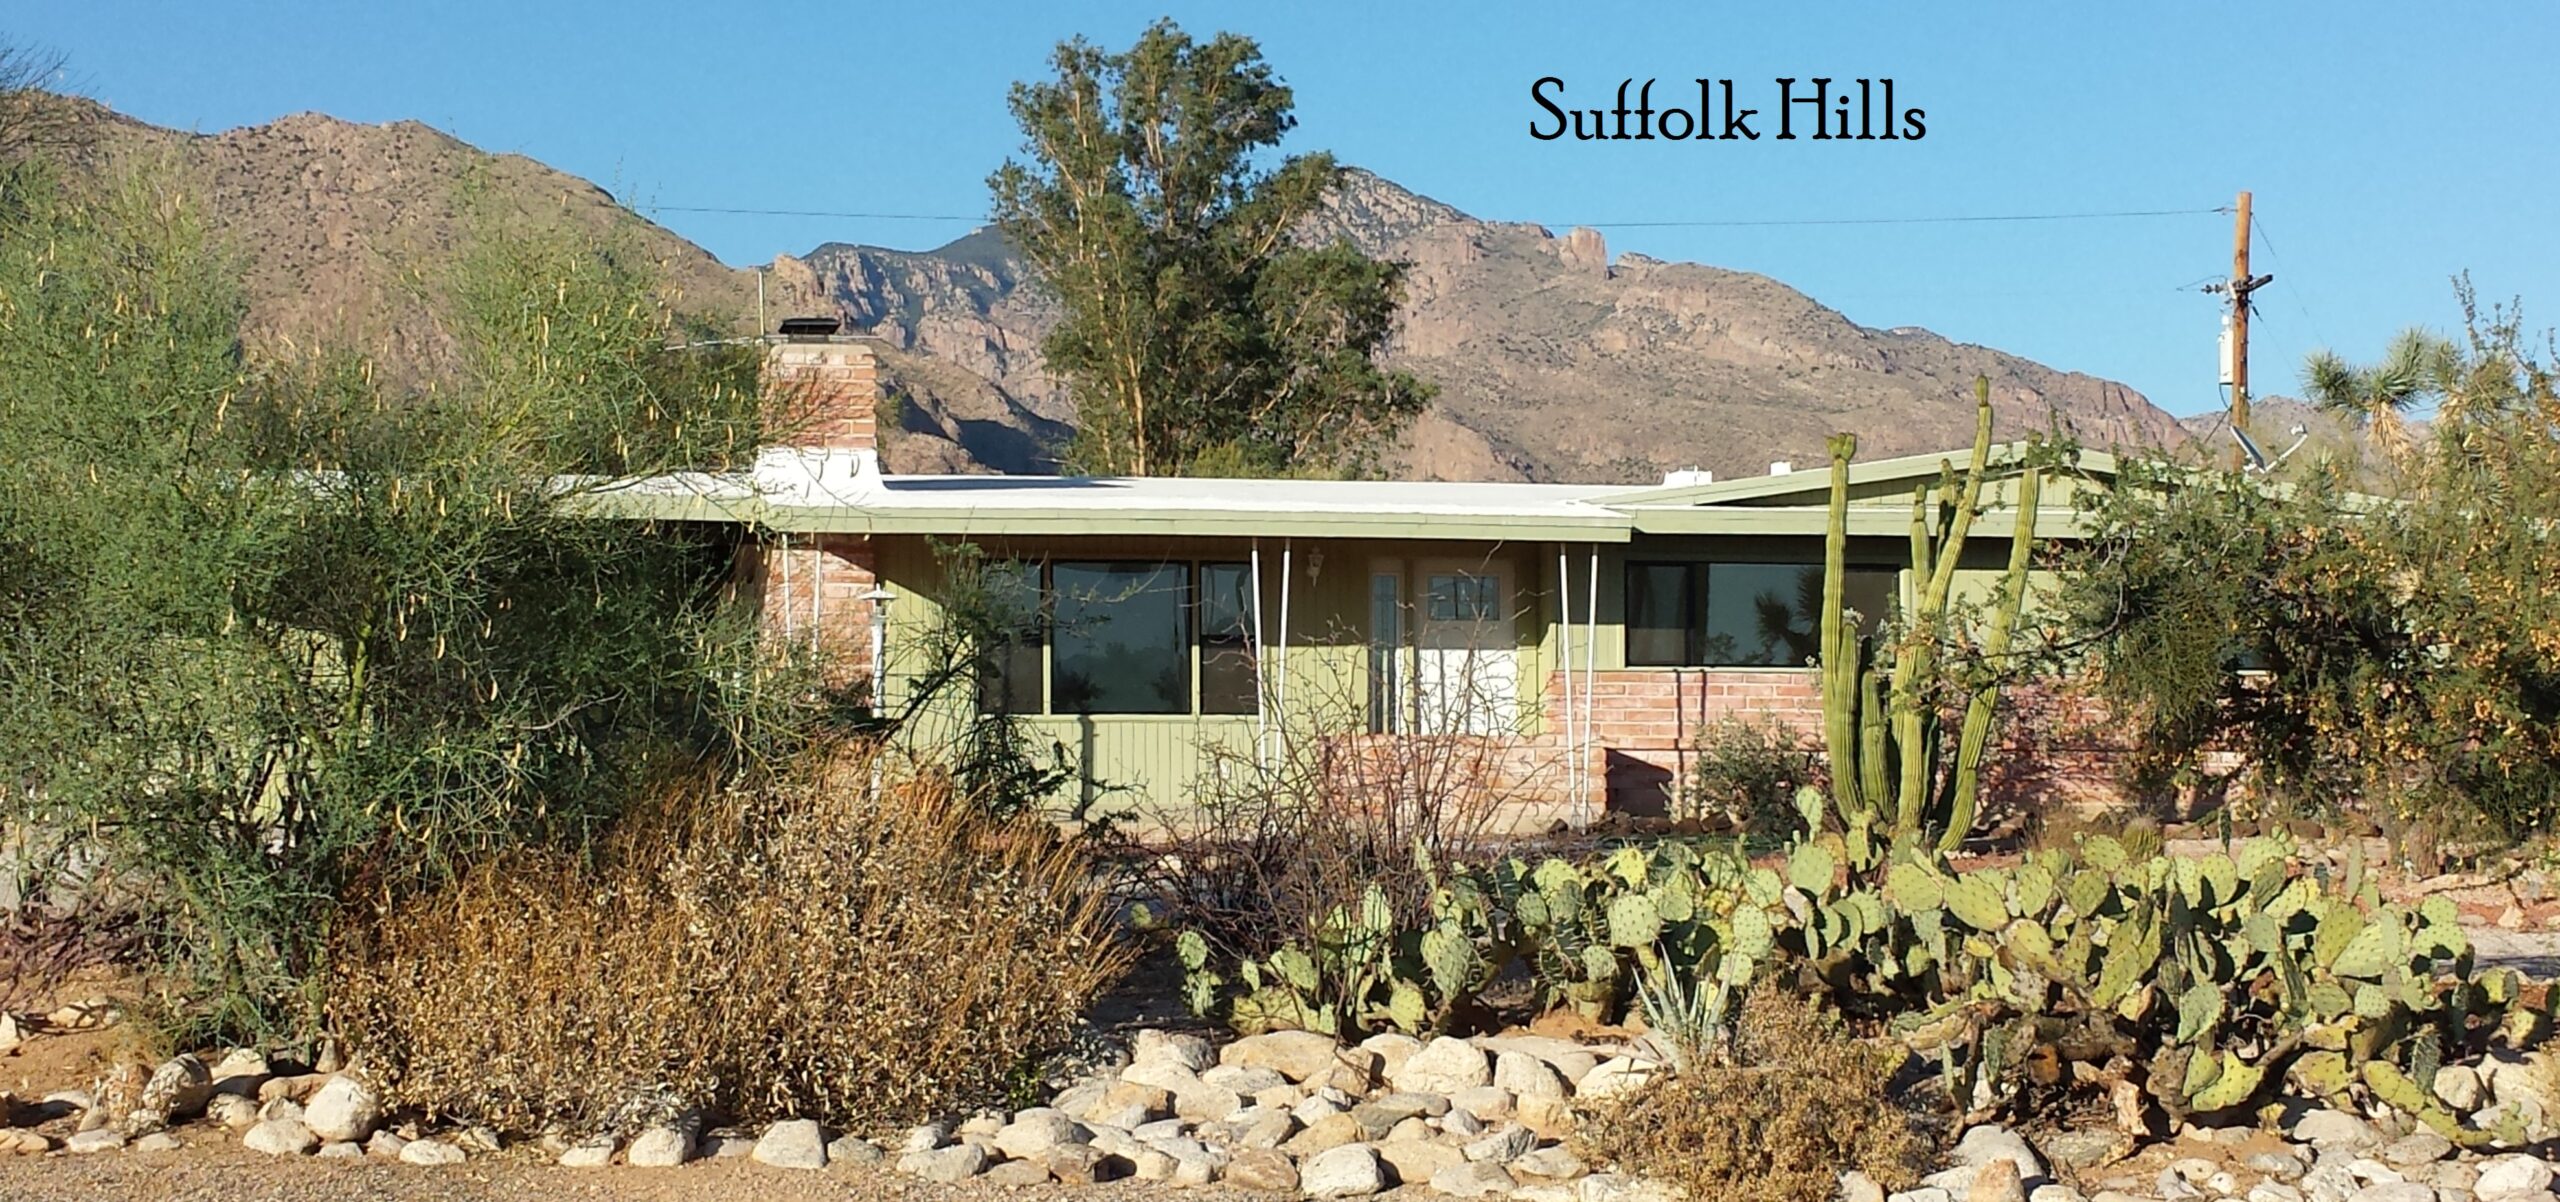 Suffolk Hills home in Oro Valley, northwest of Tucson